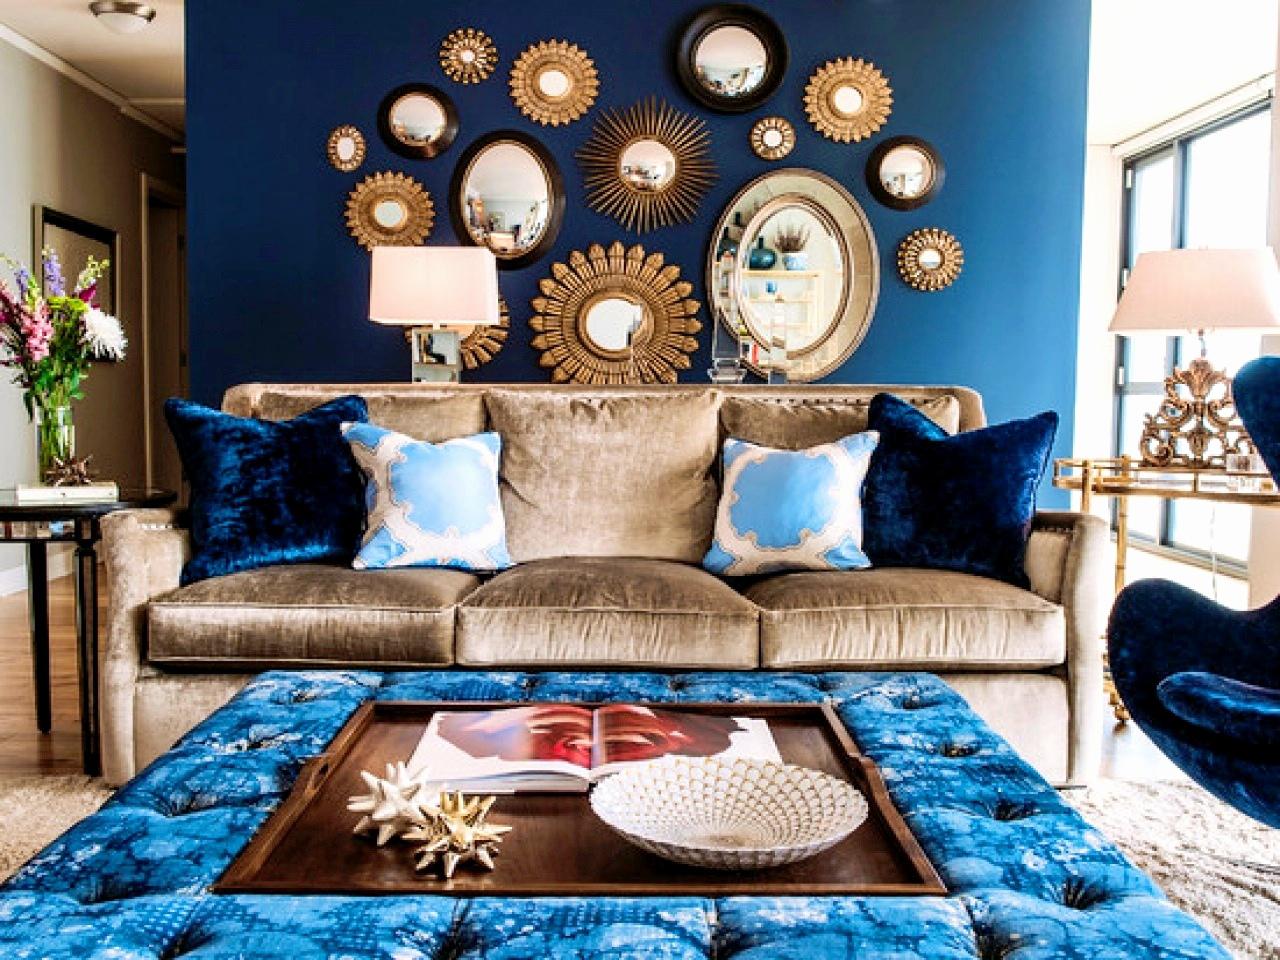 Bohemiskt utseende i det blåa och bruna vardagsrummet